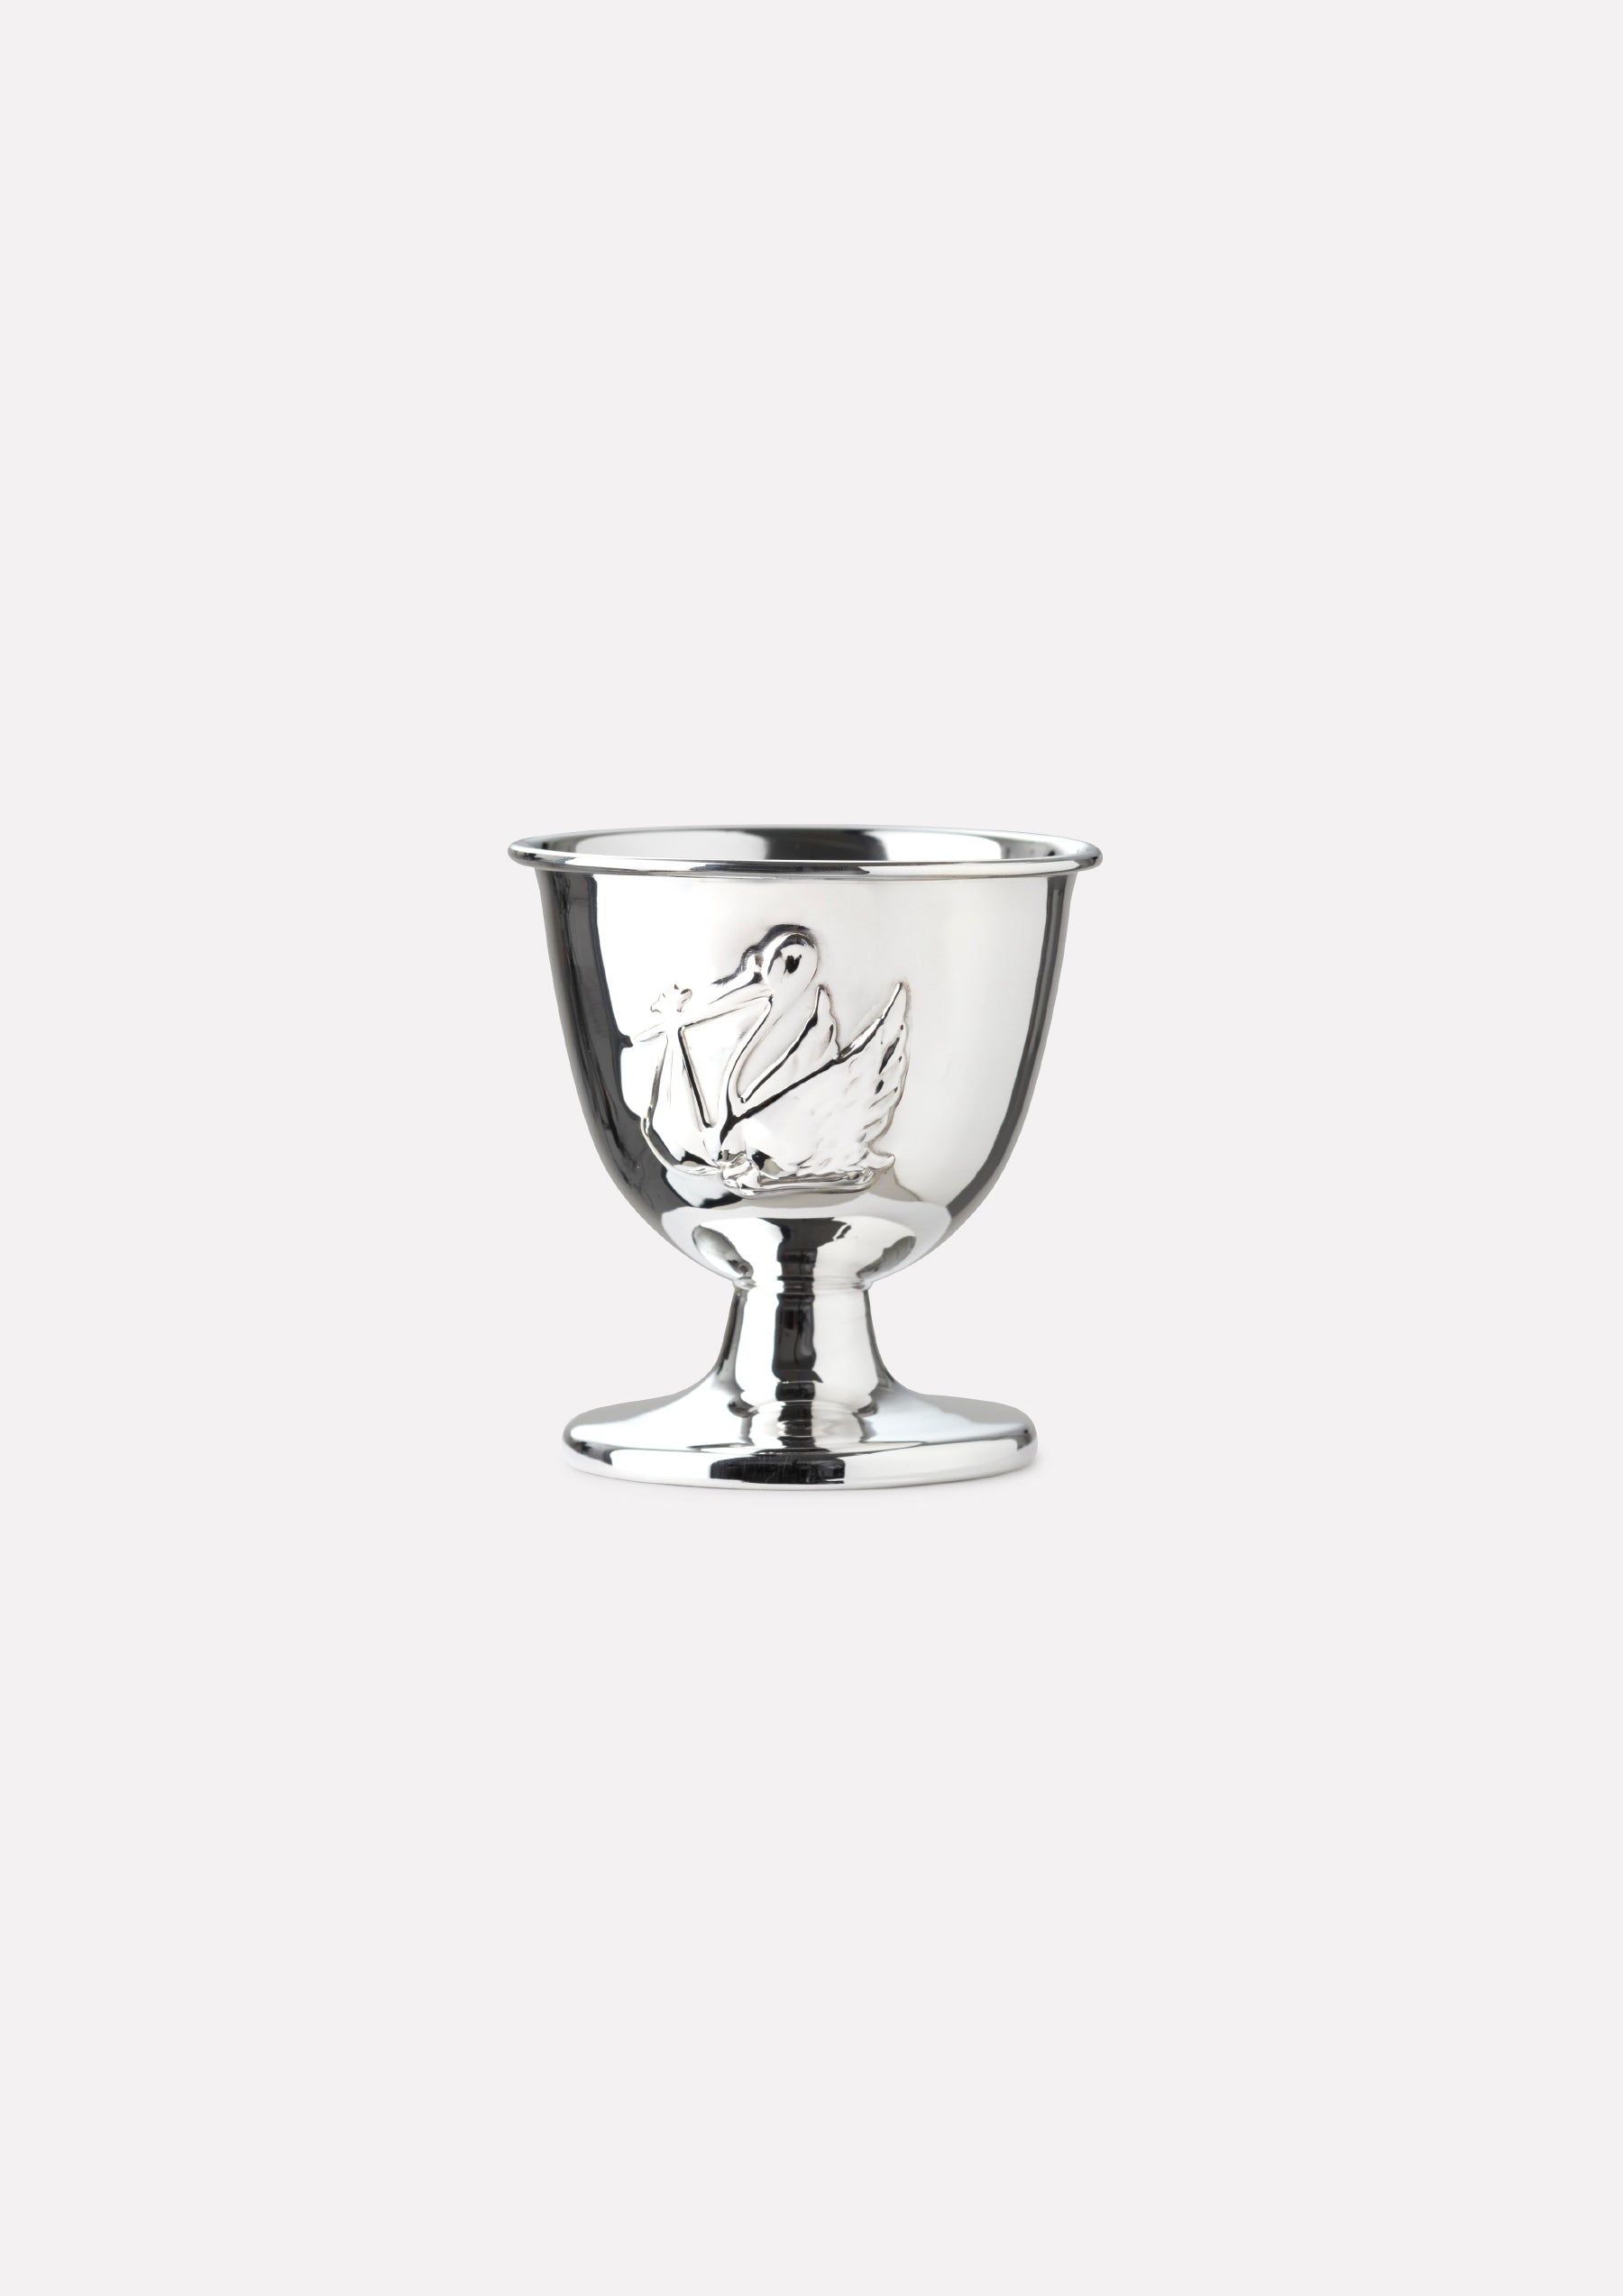 Stork egg cup